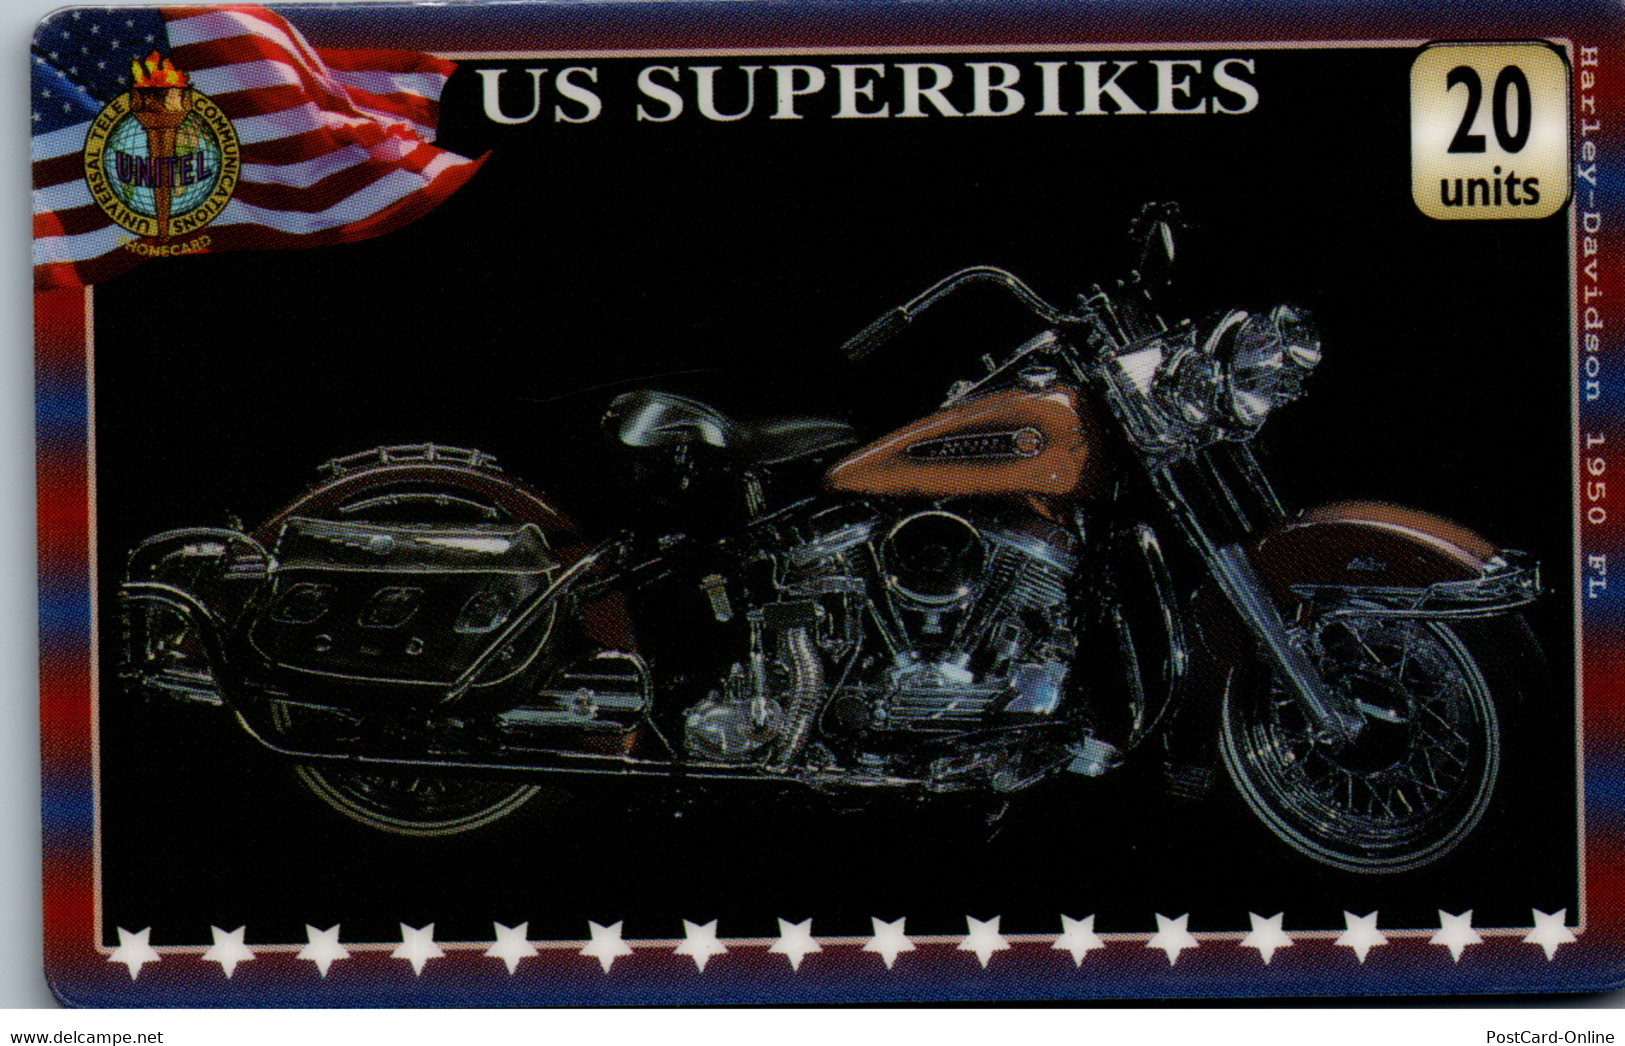 20333 - Großbritannien - UniTel , US Superbikes , Harley Davidson - BT Schede Mondiali (Prepagate)